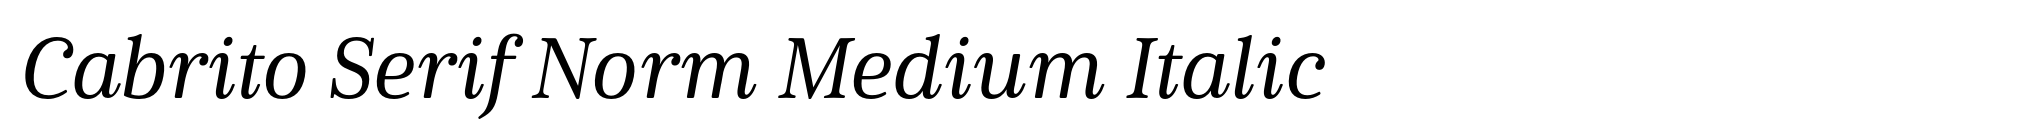 Cabrito Serif Norm Medium Italic image